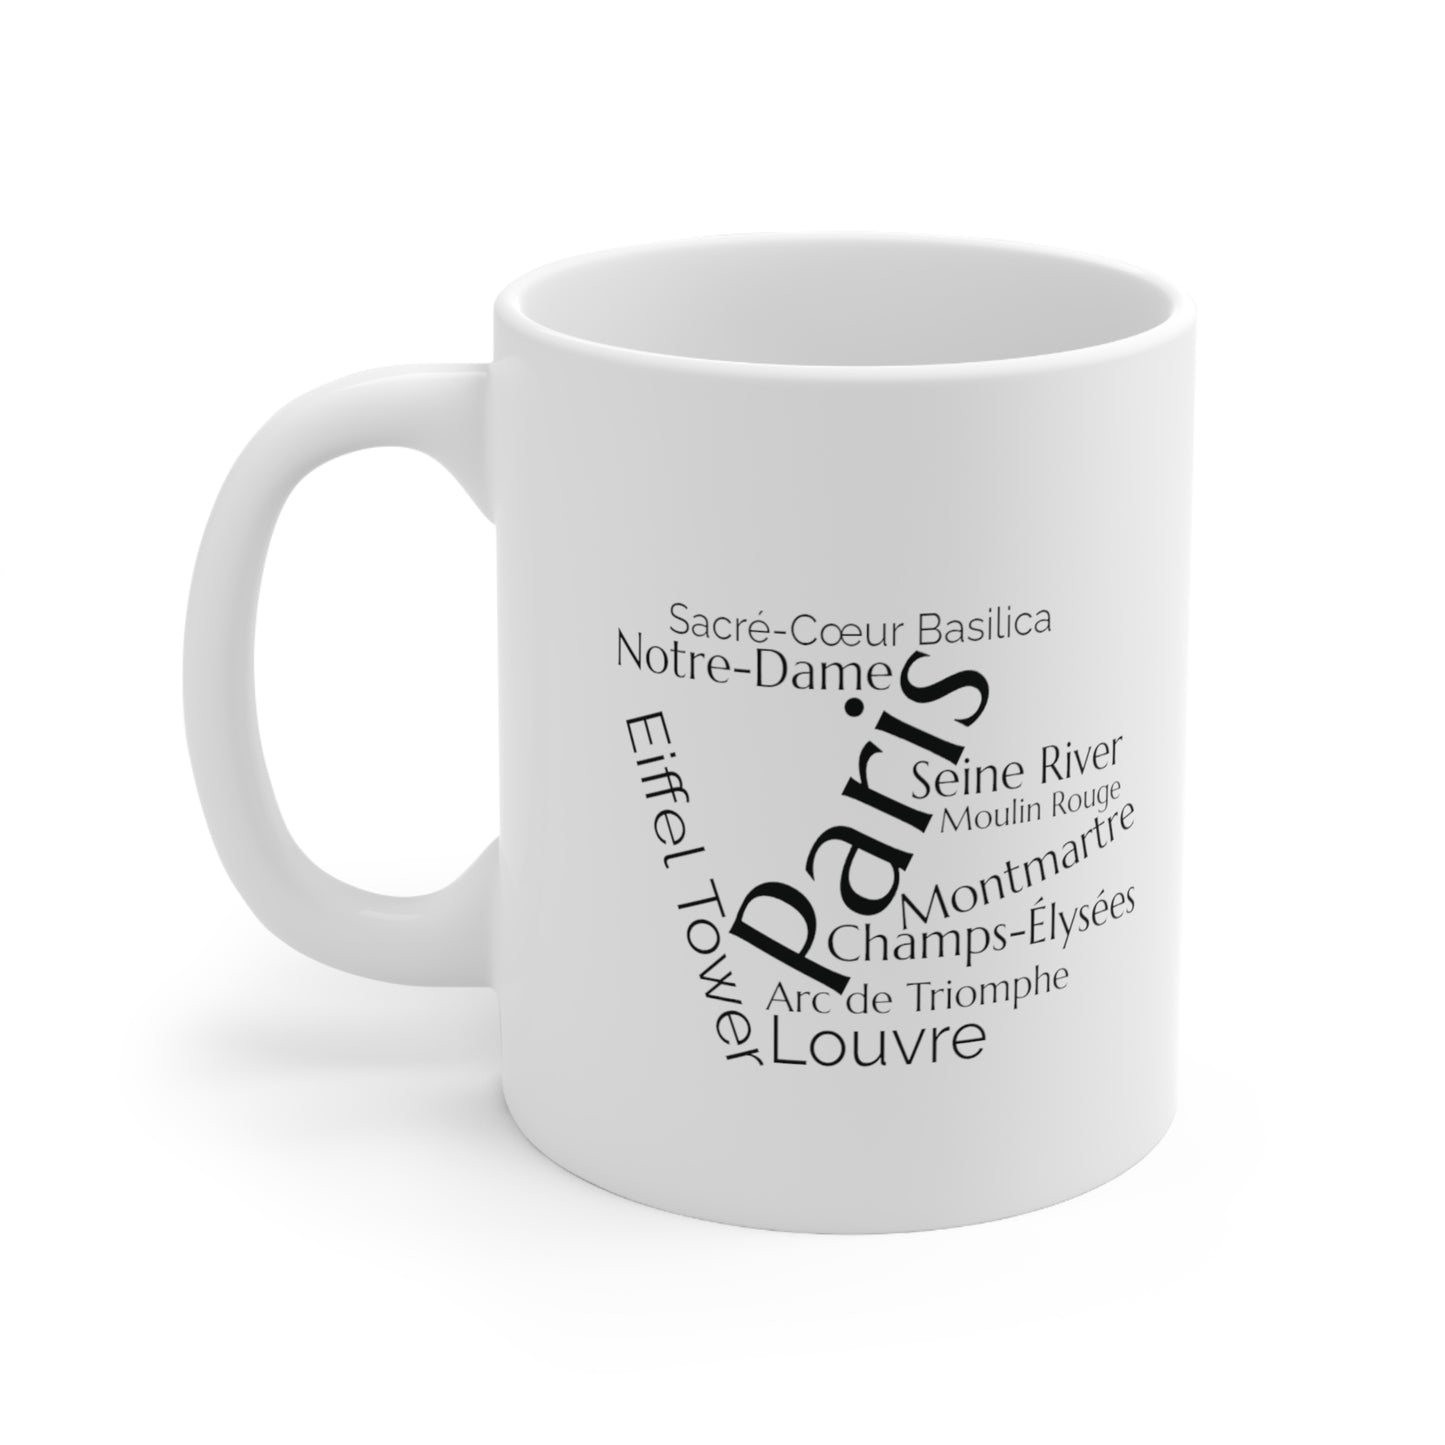 Paris word mug, local mug, geography mug, gift, mug, coffee cup, word mug, wordcloud mug, christmas gift, birthday gift